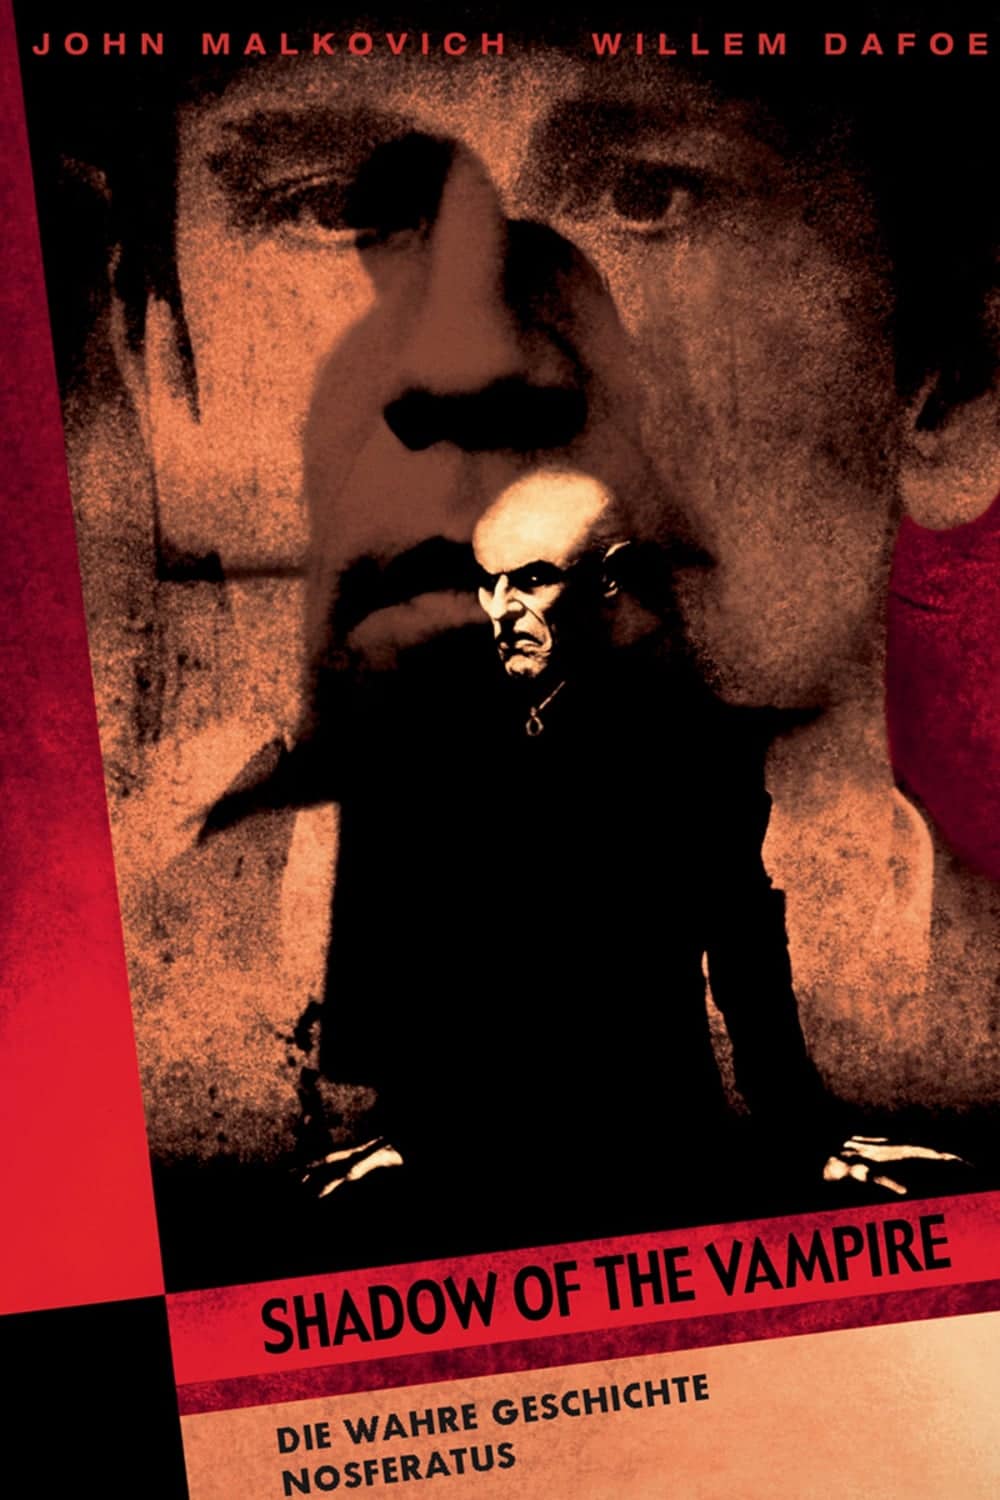 Plakat von "Shadow of the Vampire"